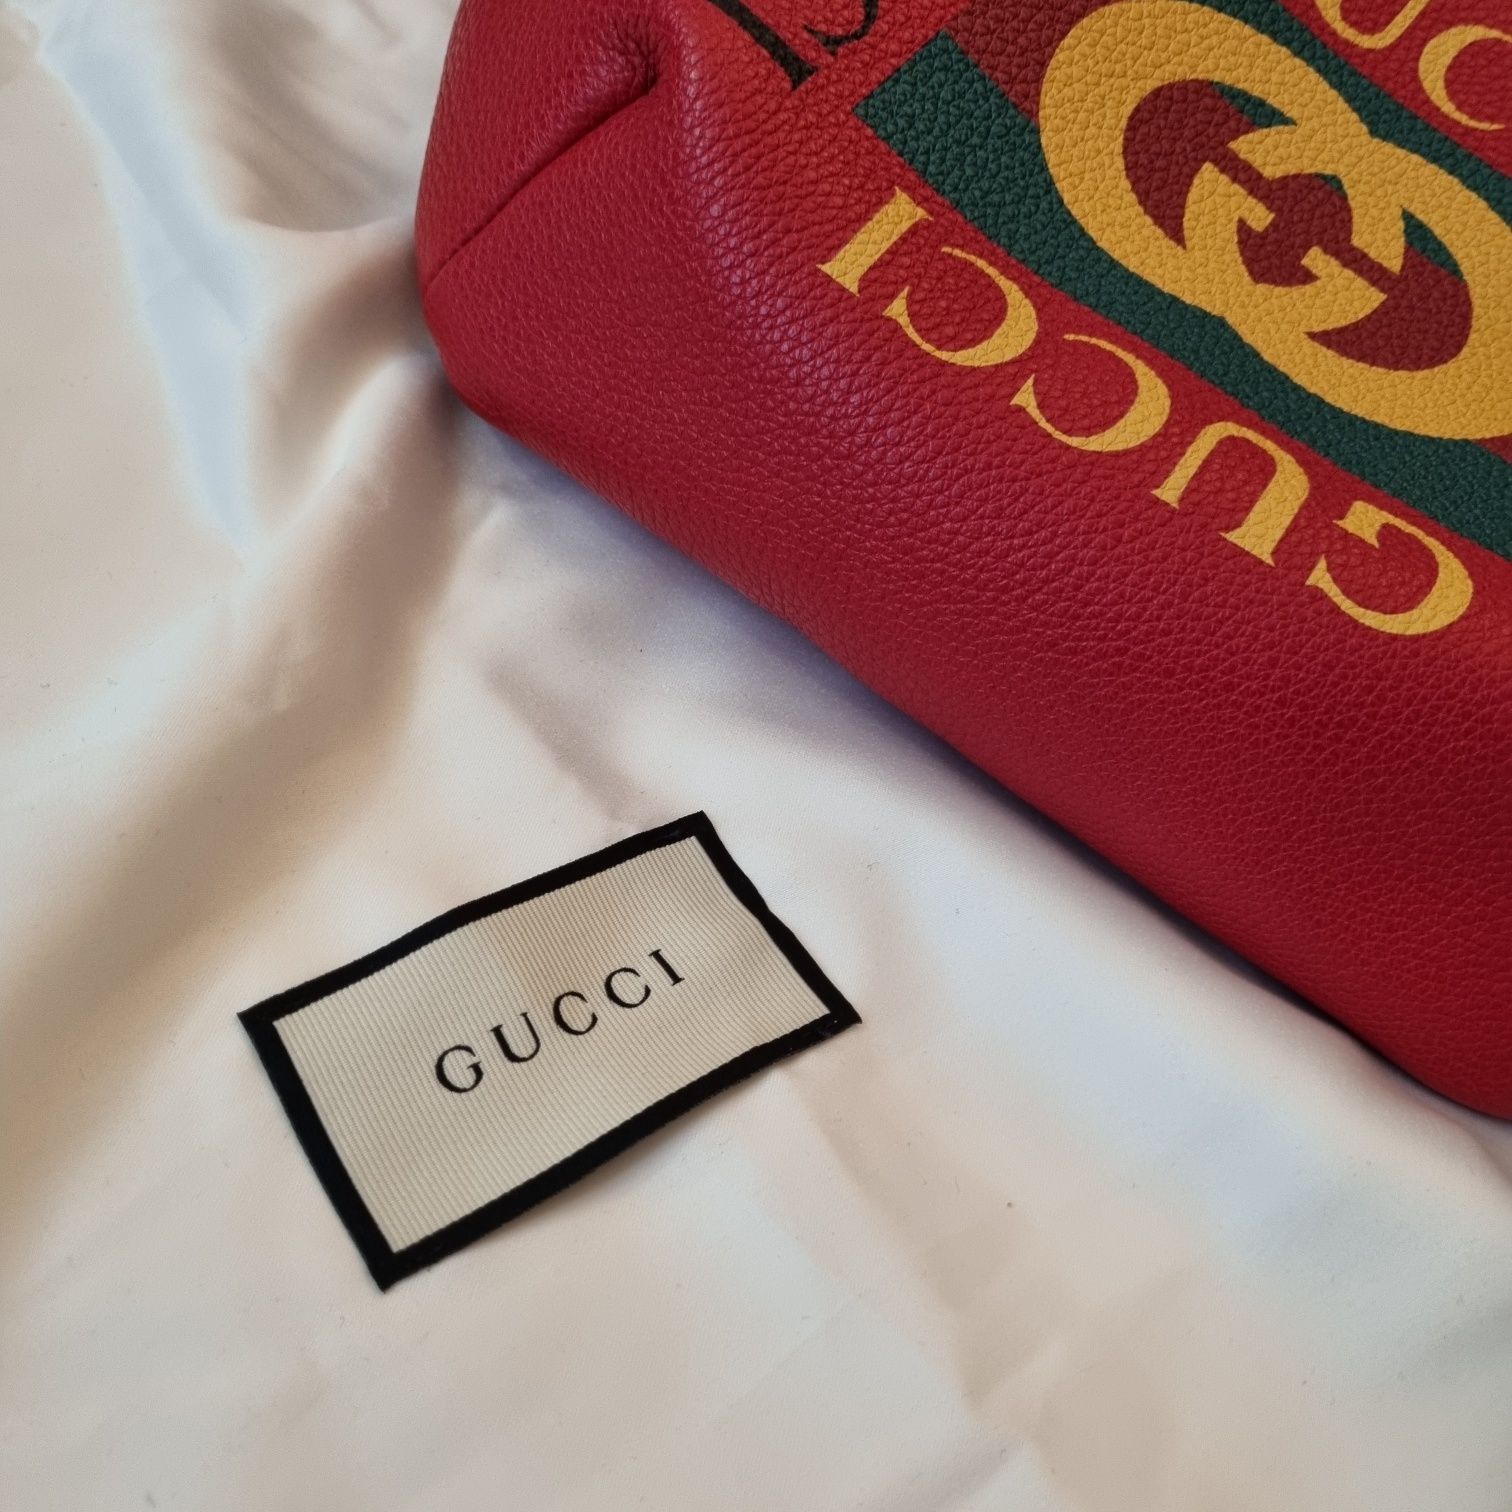 Gucci red bag nowa oryginalna nerka torebka torba